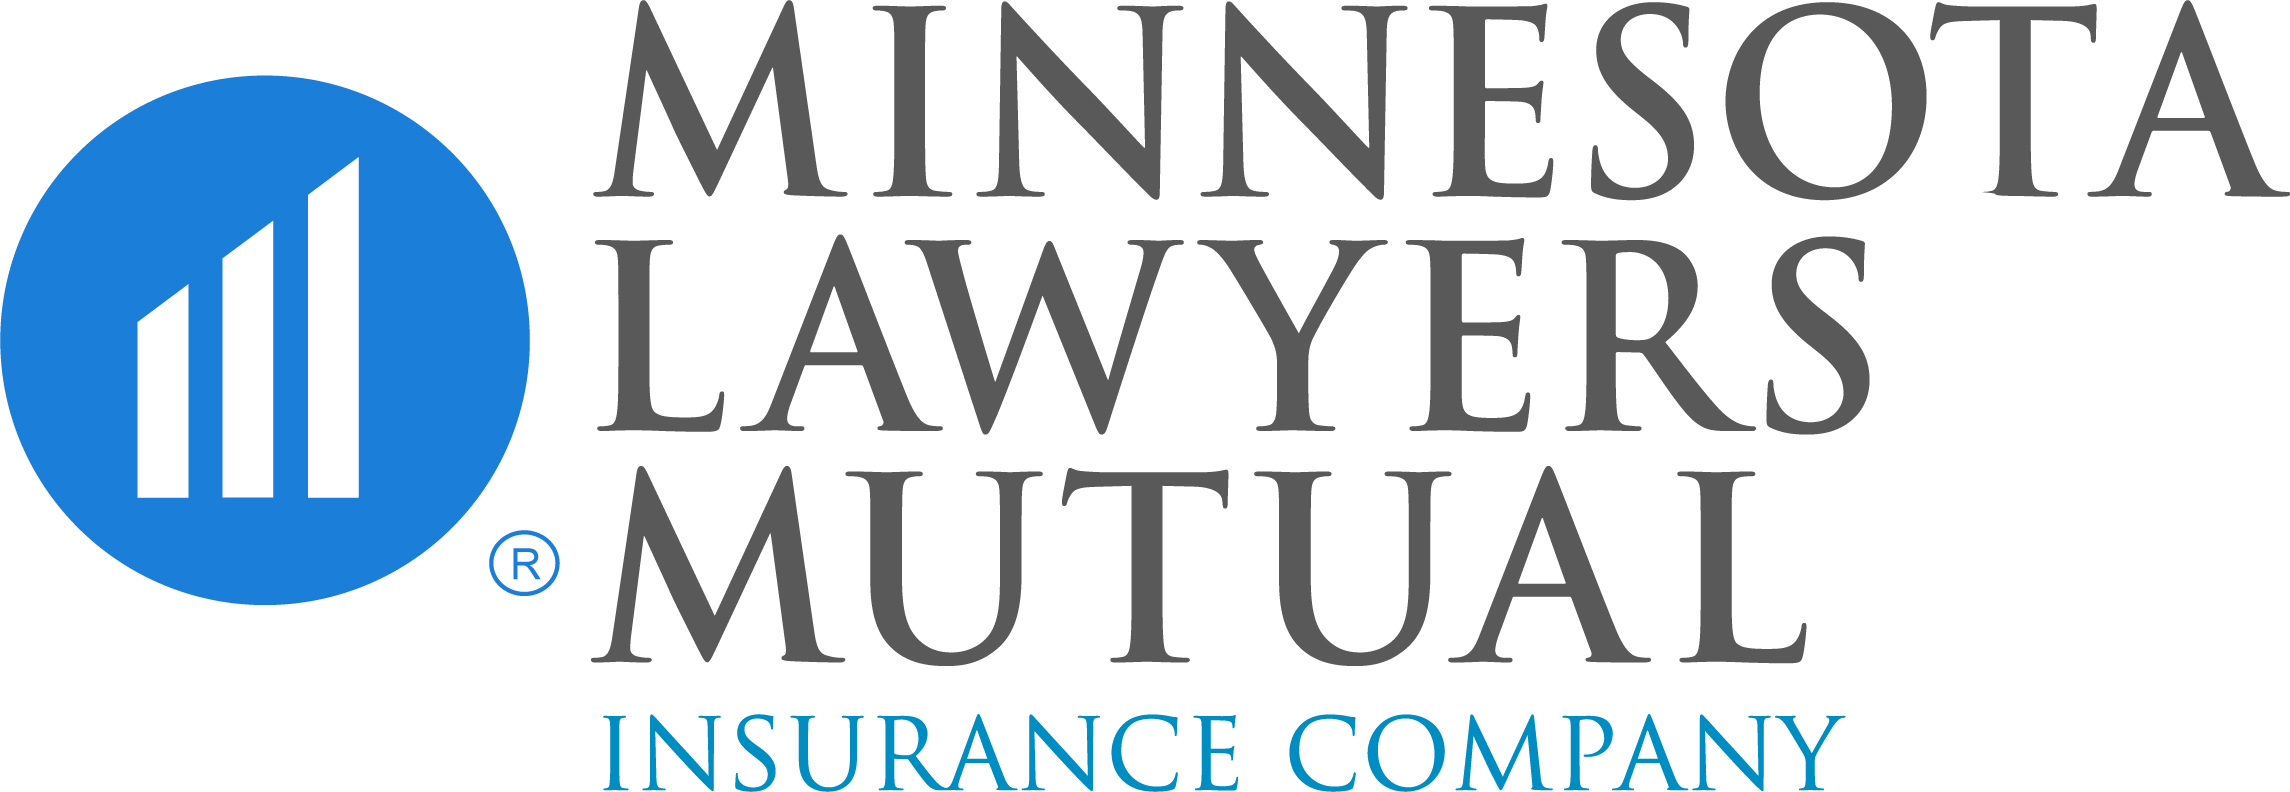 Minnesota Lawyers Mutual Insurance